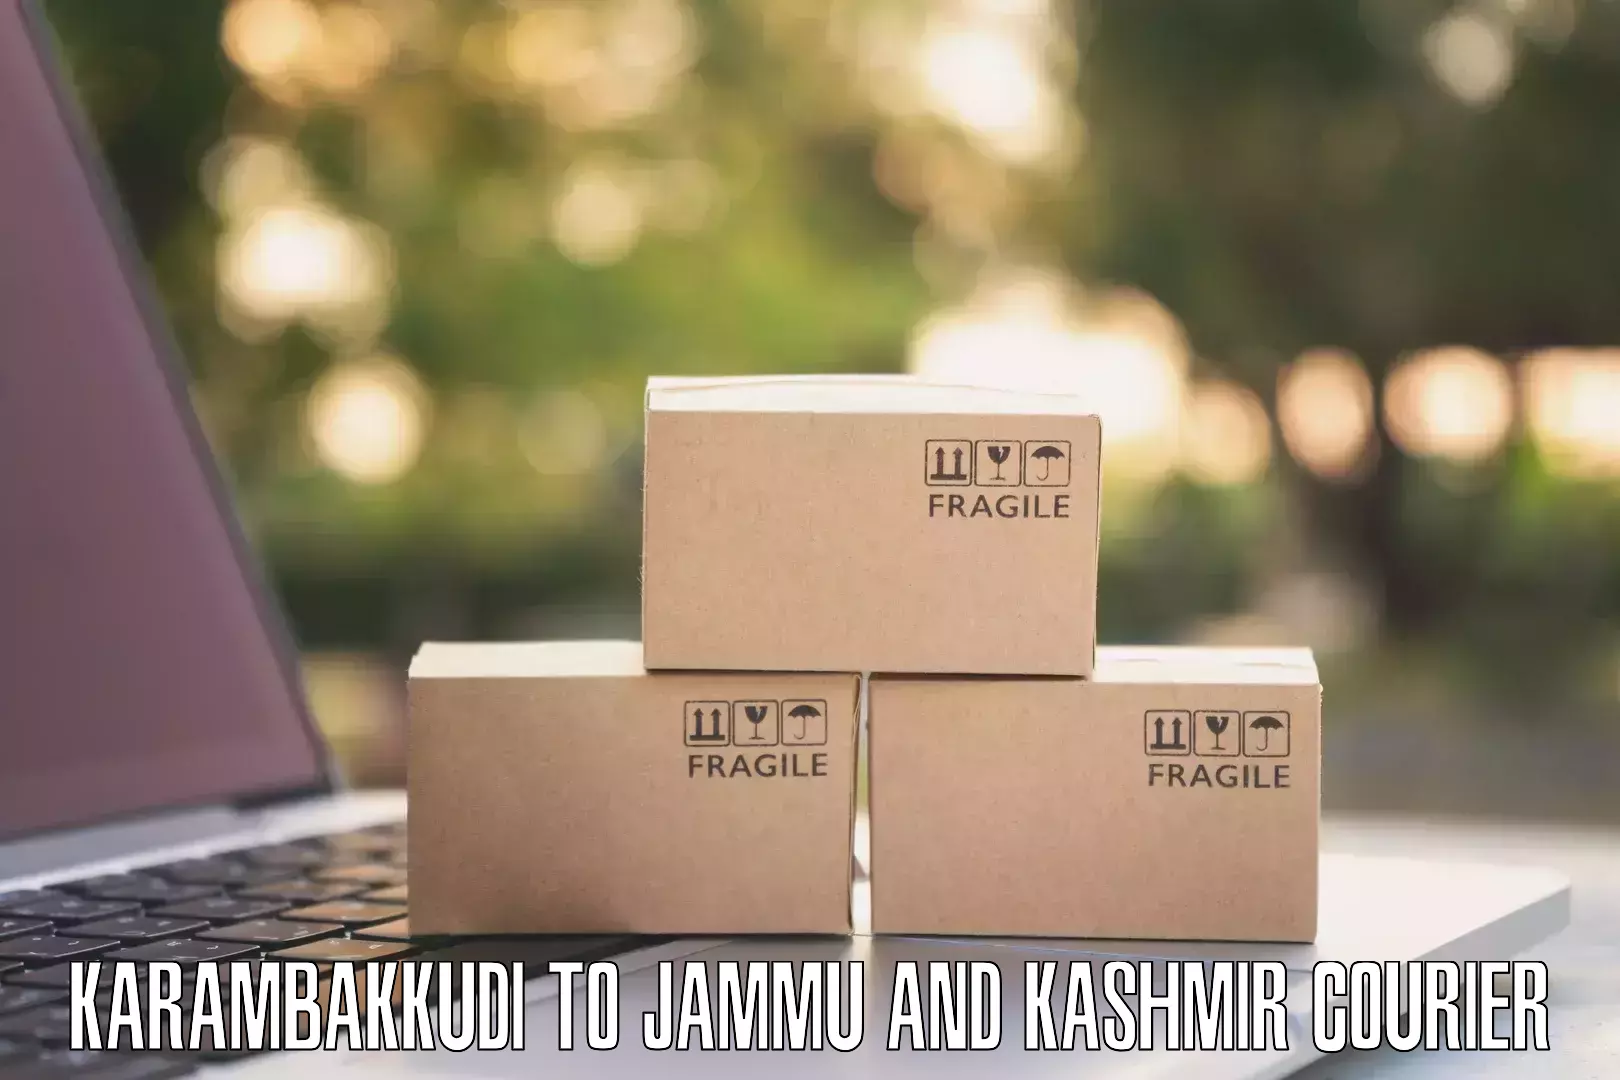 Rapid shipping services Karambakkudi to Jammu